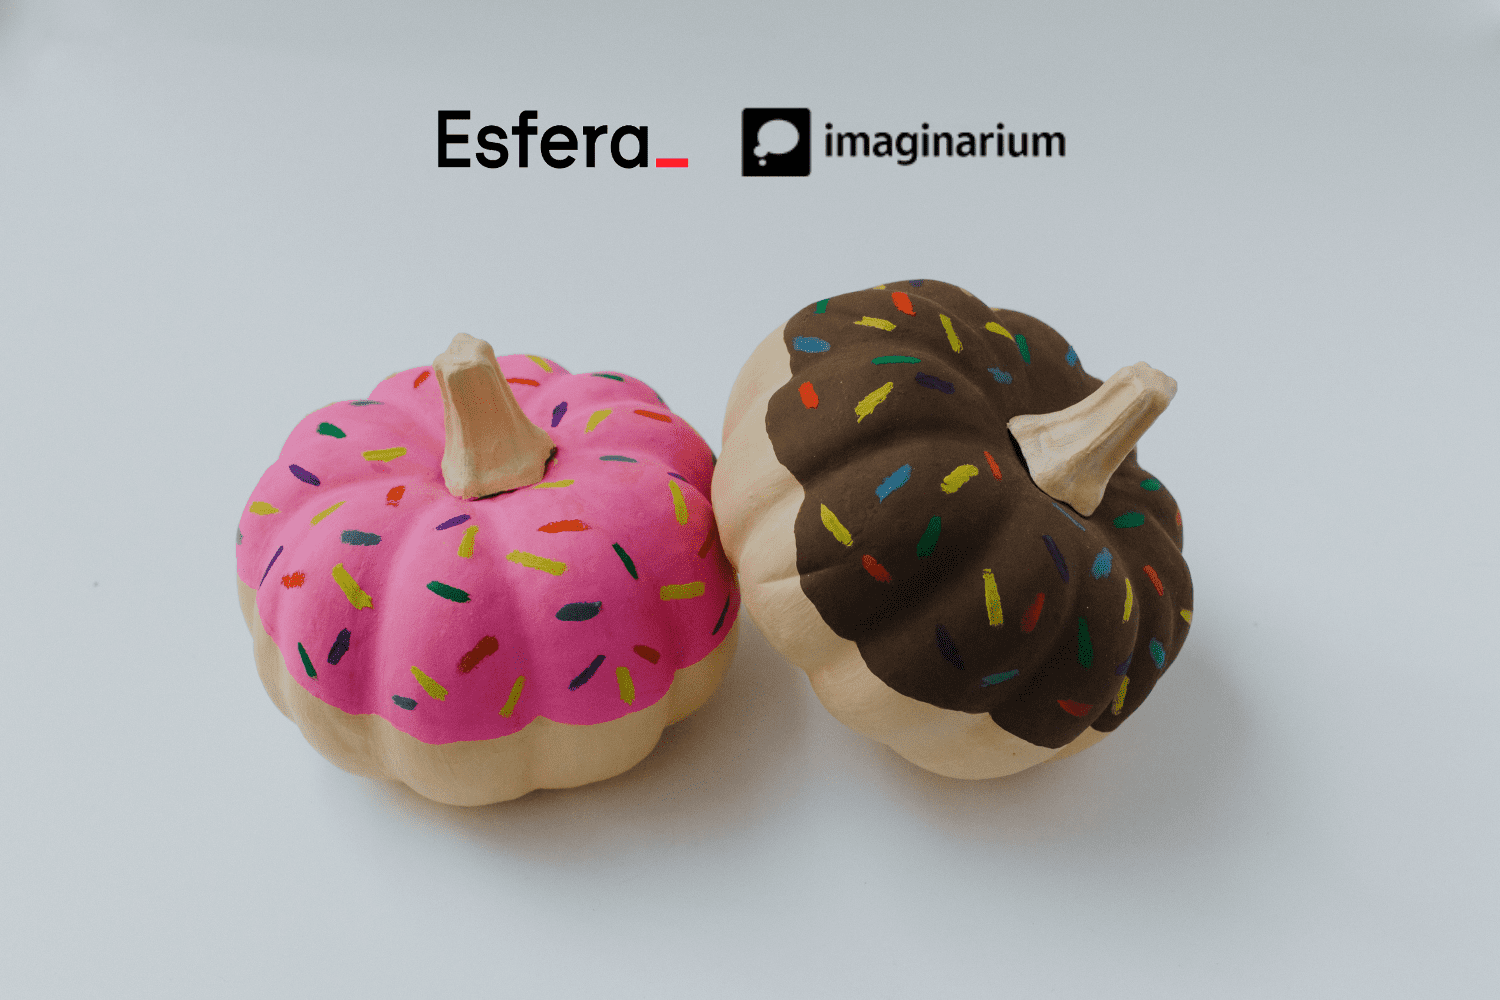 objetos de decoração em formato de dunnets com logo Esfera e Imaginarium 30 pontos Esfera